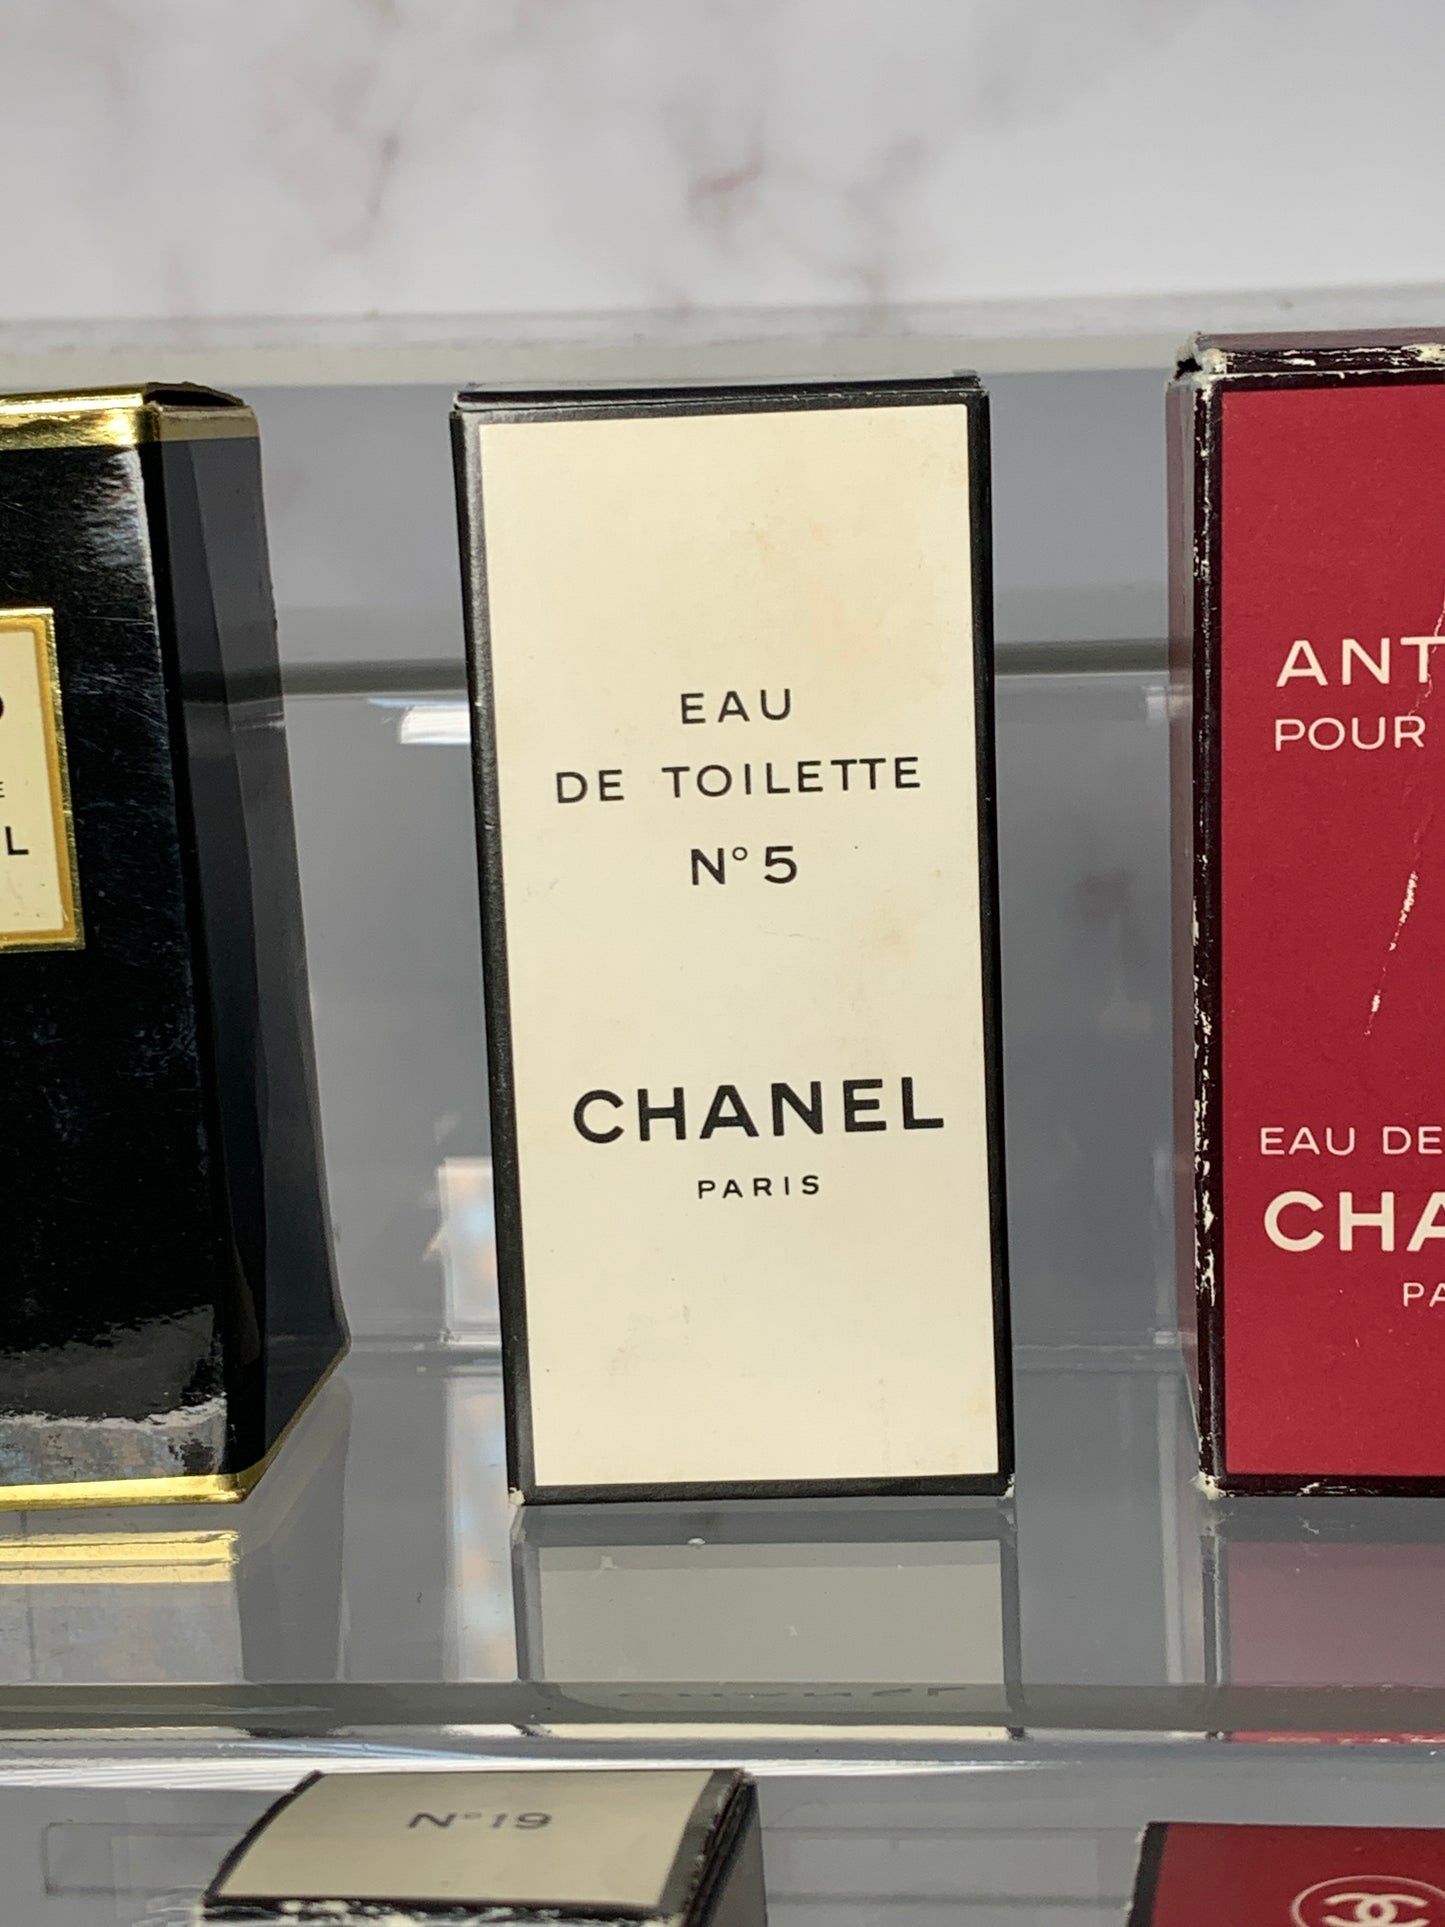 Rare Chanel No. 5, 19, coco, antaeus Eau de toilette edt 4m, 19ml - 121223-A